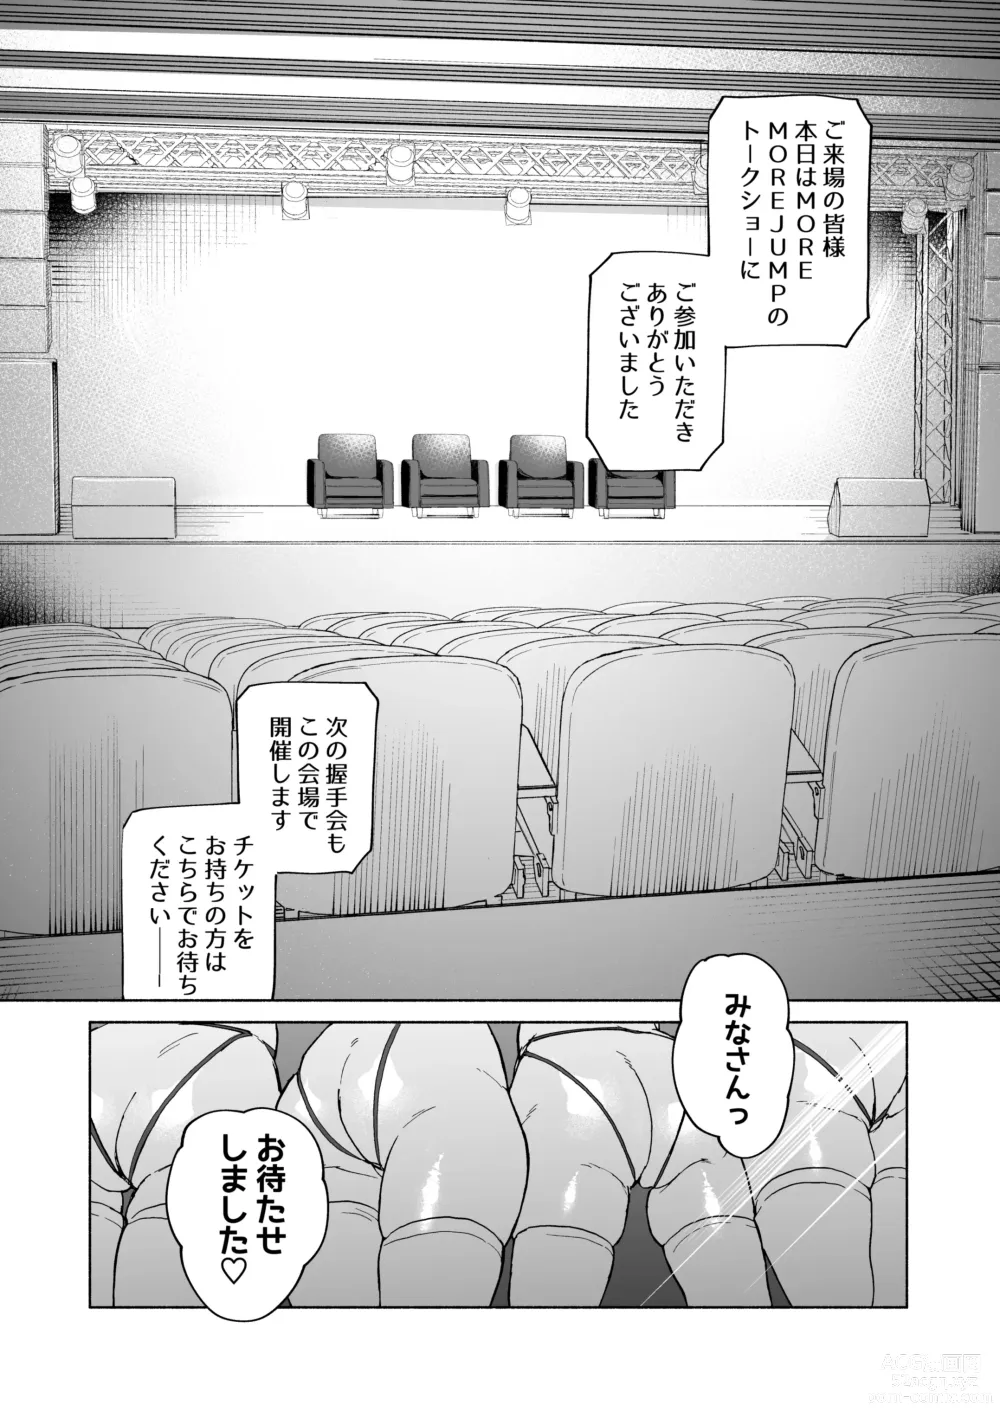 Page 4 of doujinshi MOA!